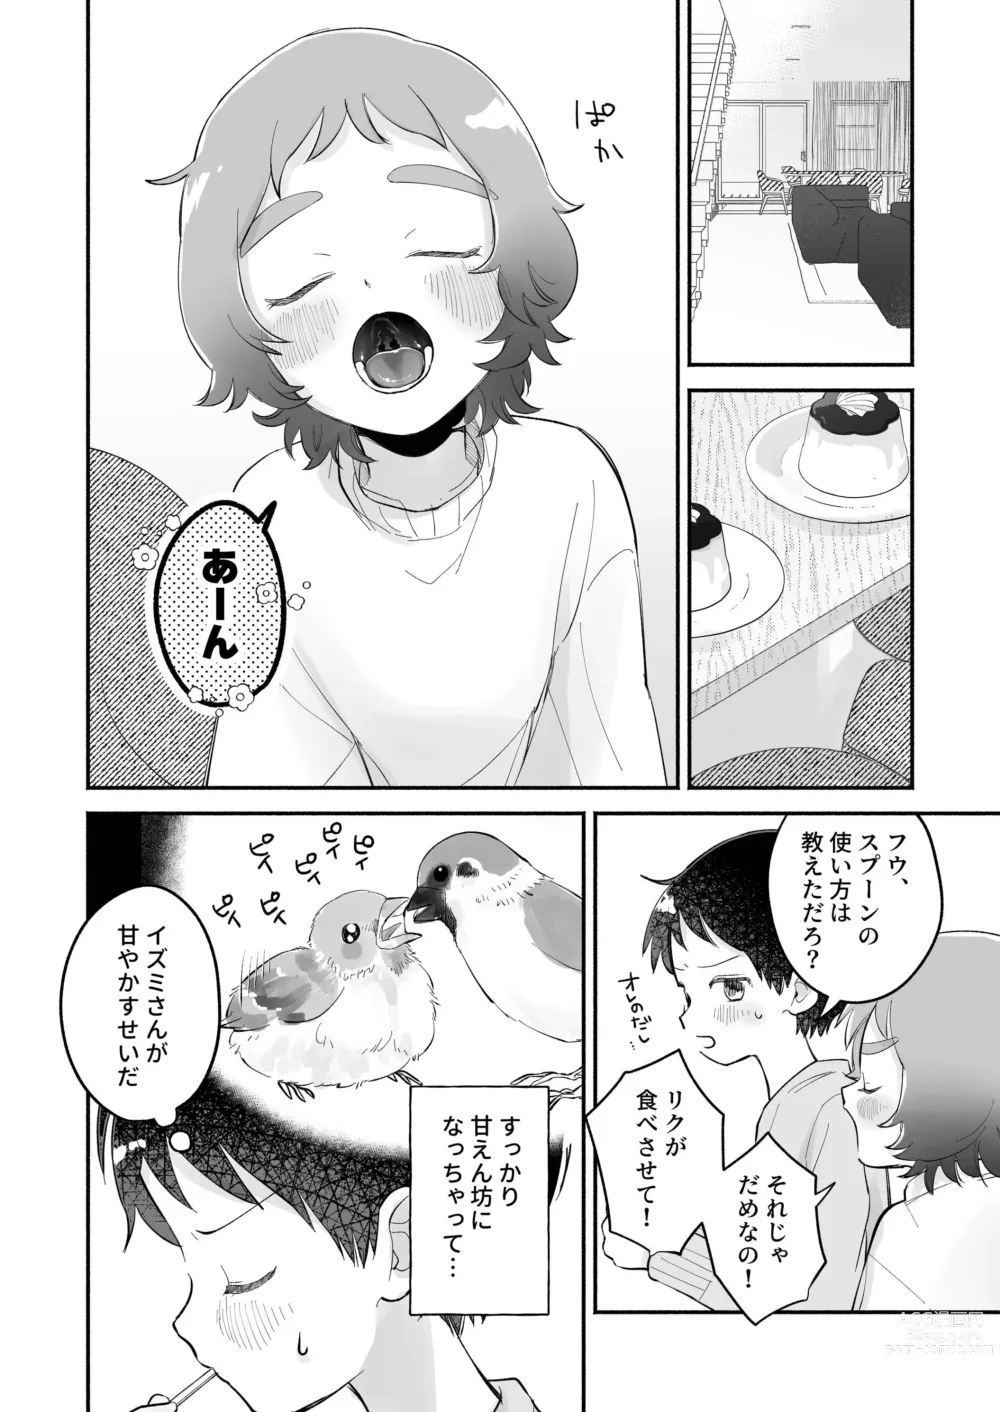 Page 6 of doujinshi Riku to Fuu Akachan Dekireba Kazoku ni Nareru no ka na